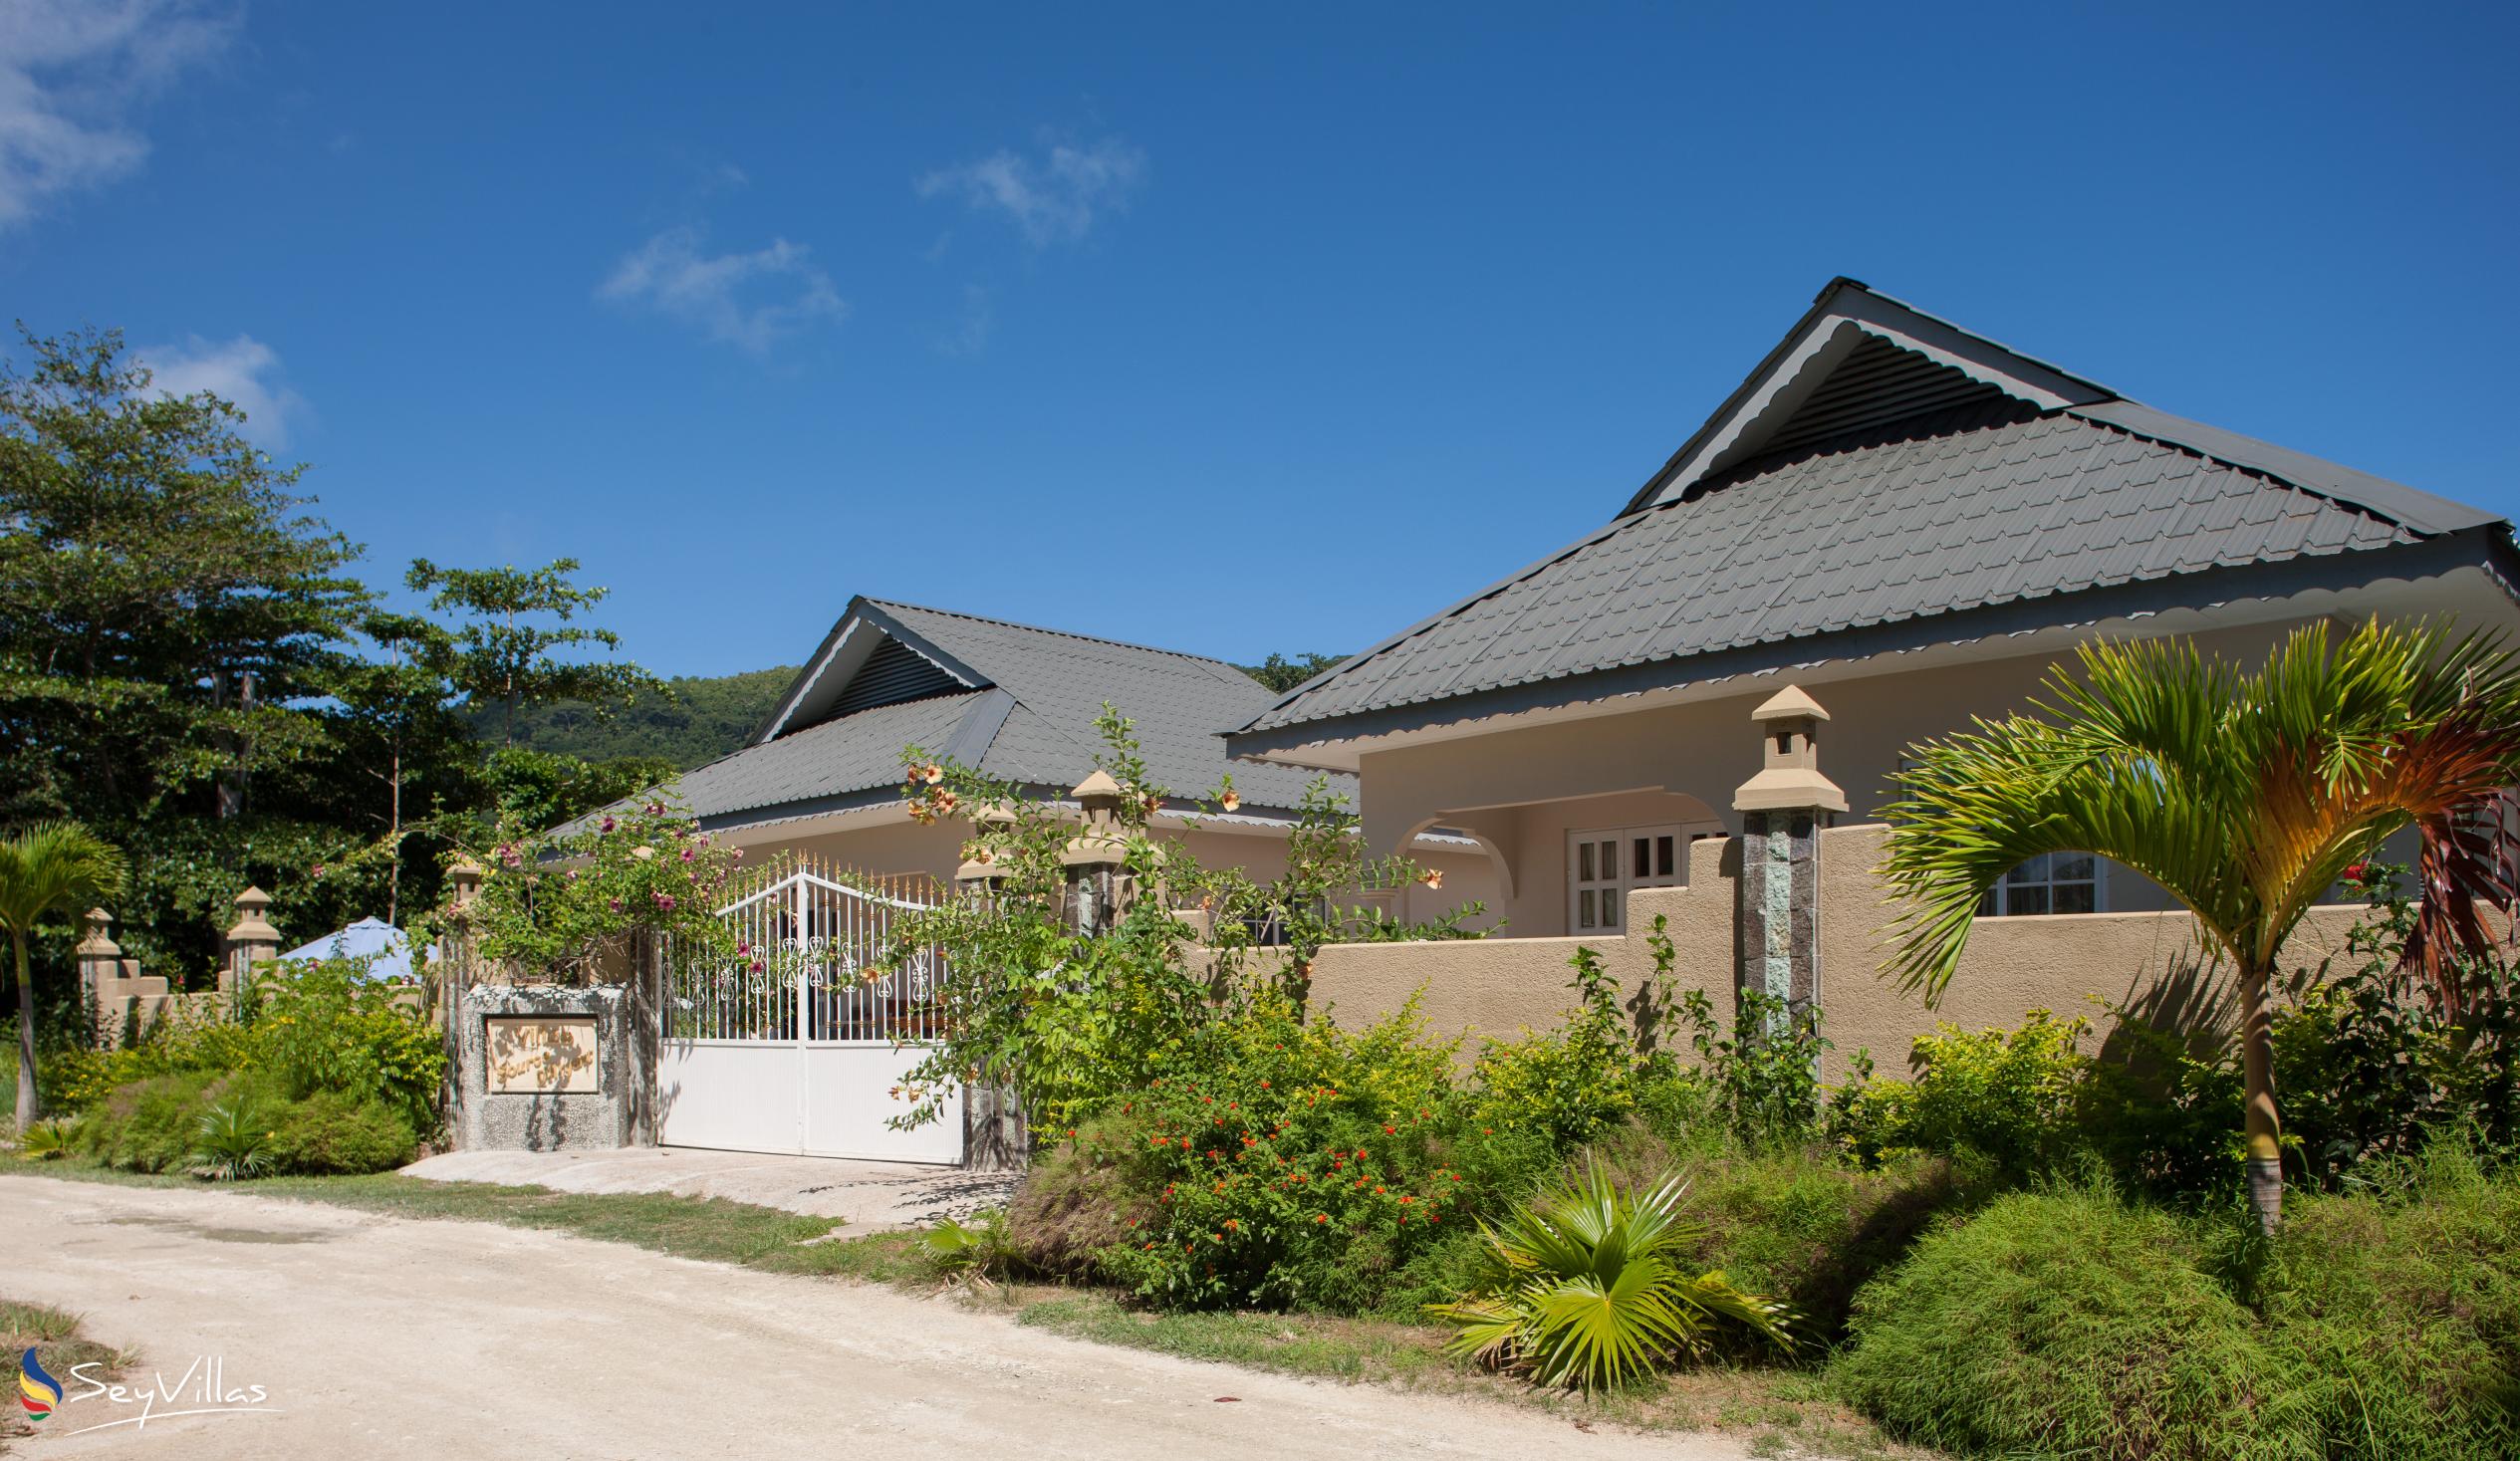 Foto 4: Villa Source D'Argent - Extérieur - La Digue (Seychelles)